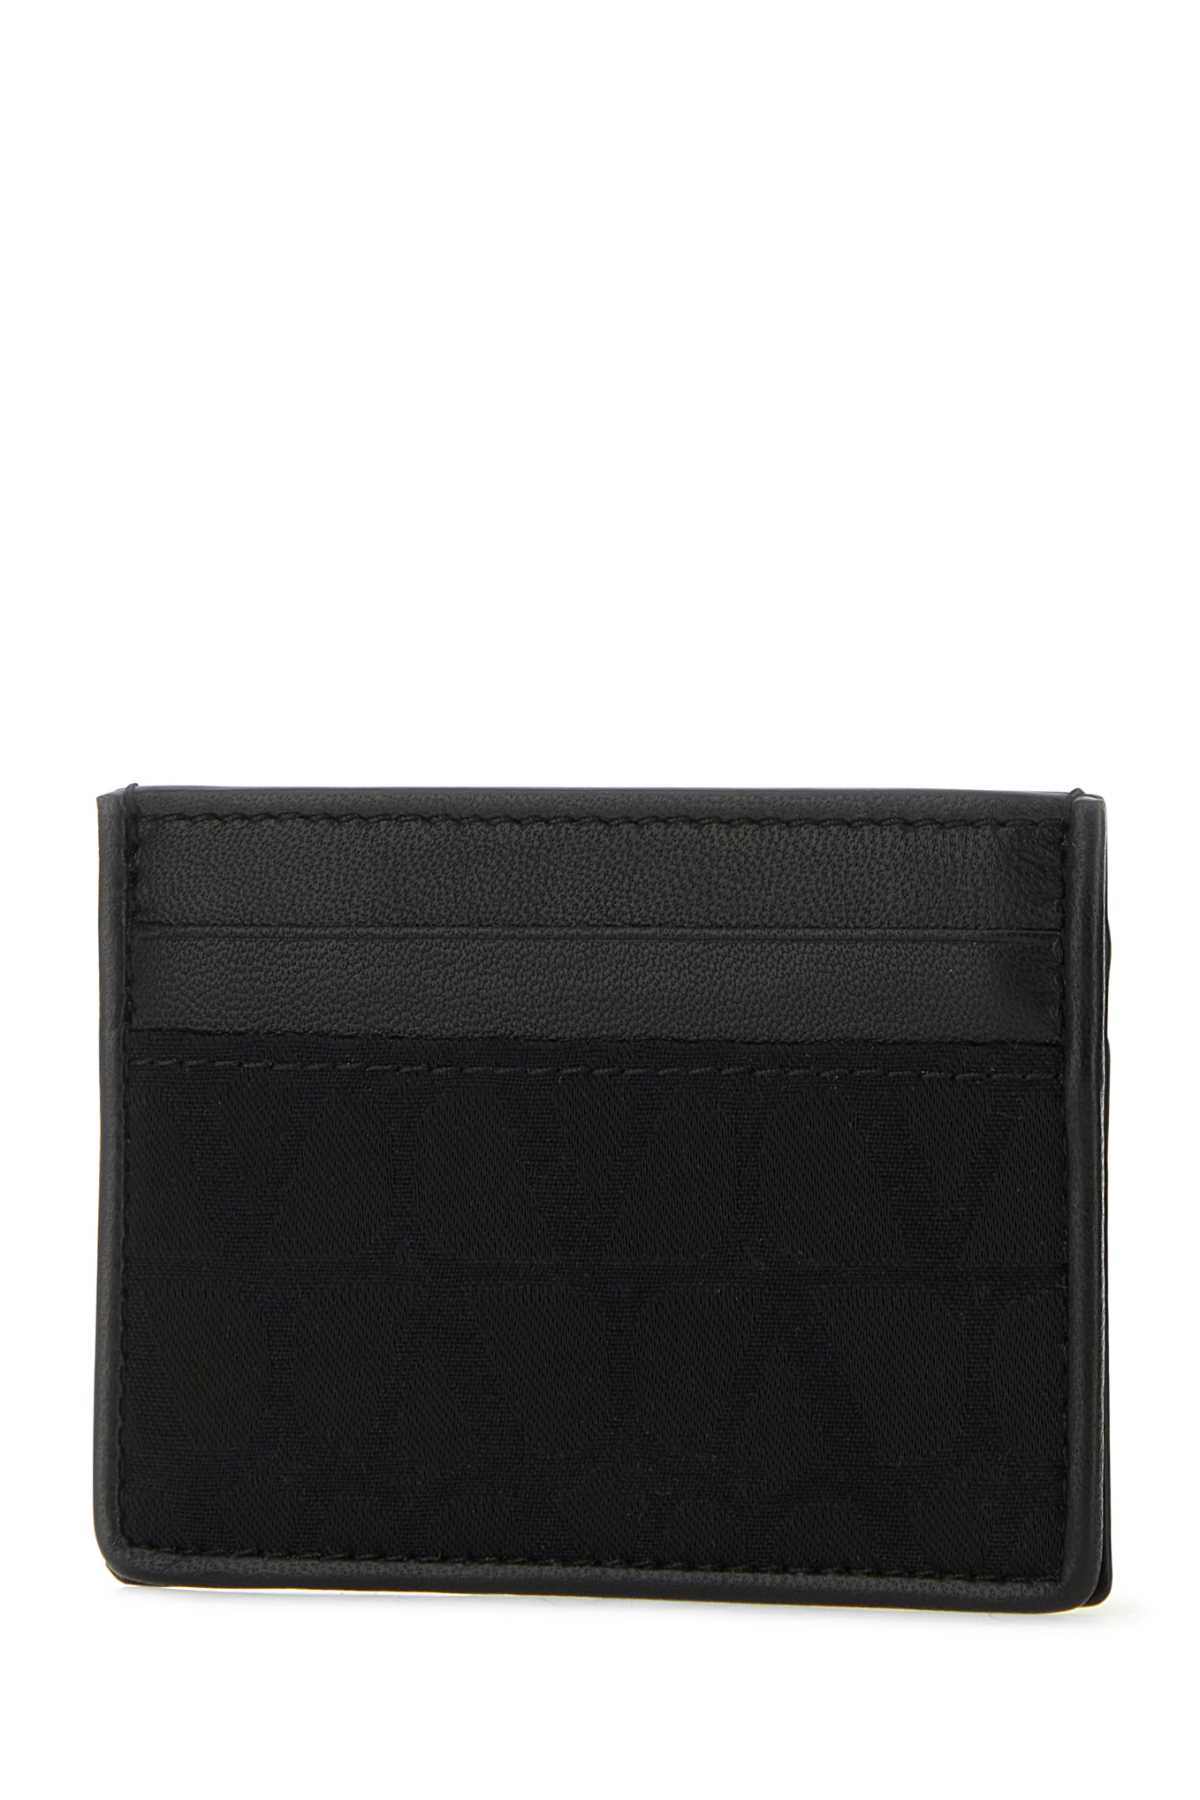 Valentino Garavani Black Leather And Fabric Toile Iconographe Card Holder In Nero